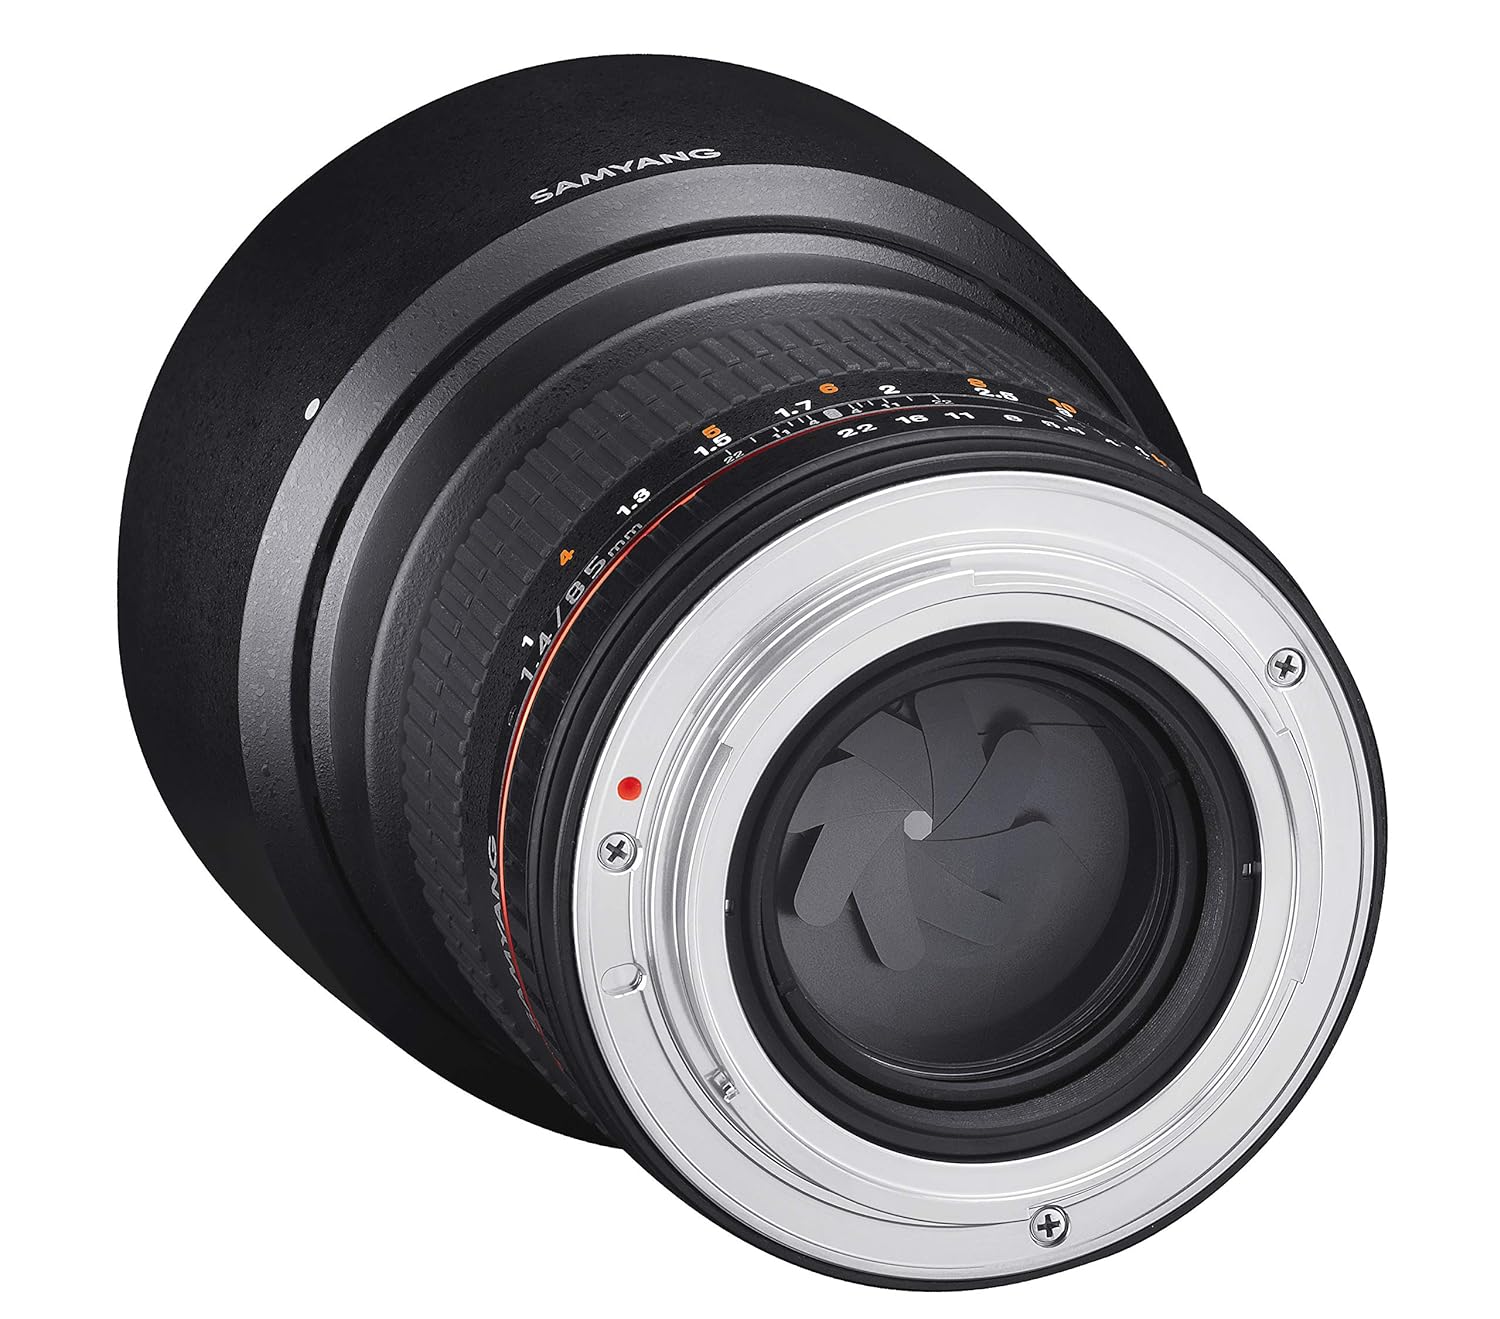 Samyang SY85MAE-N 85mm F/1.4 Prime Lens for Nikon AE (Black)